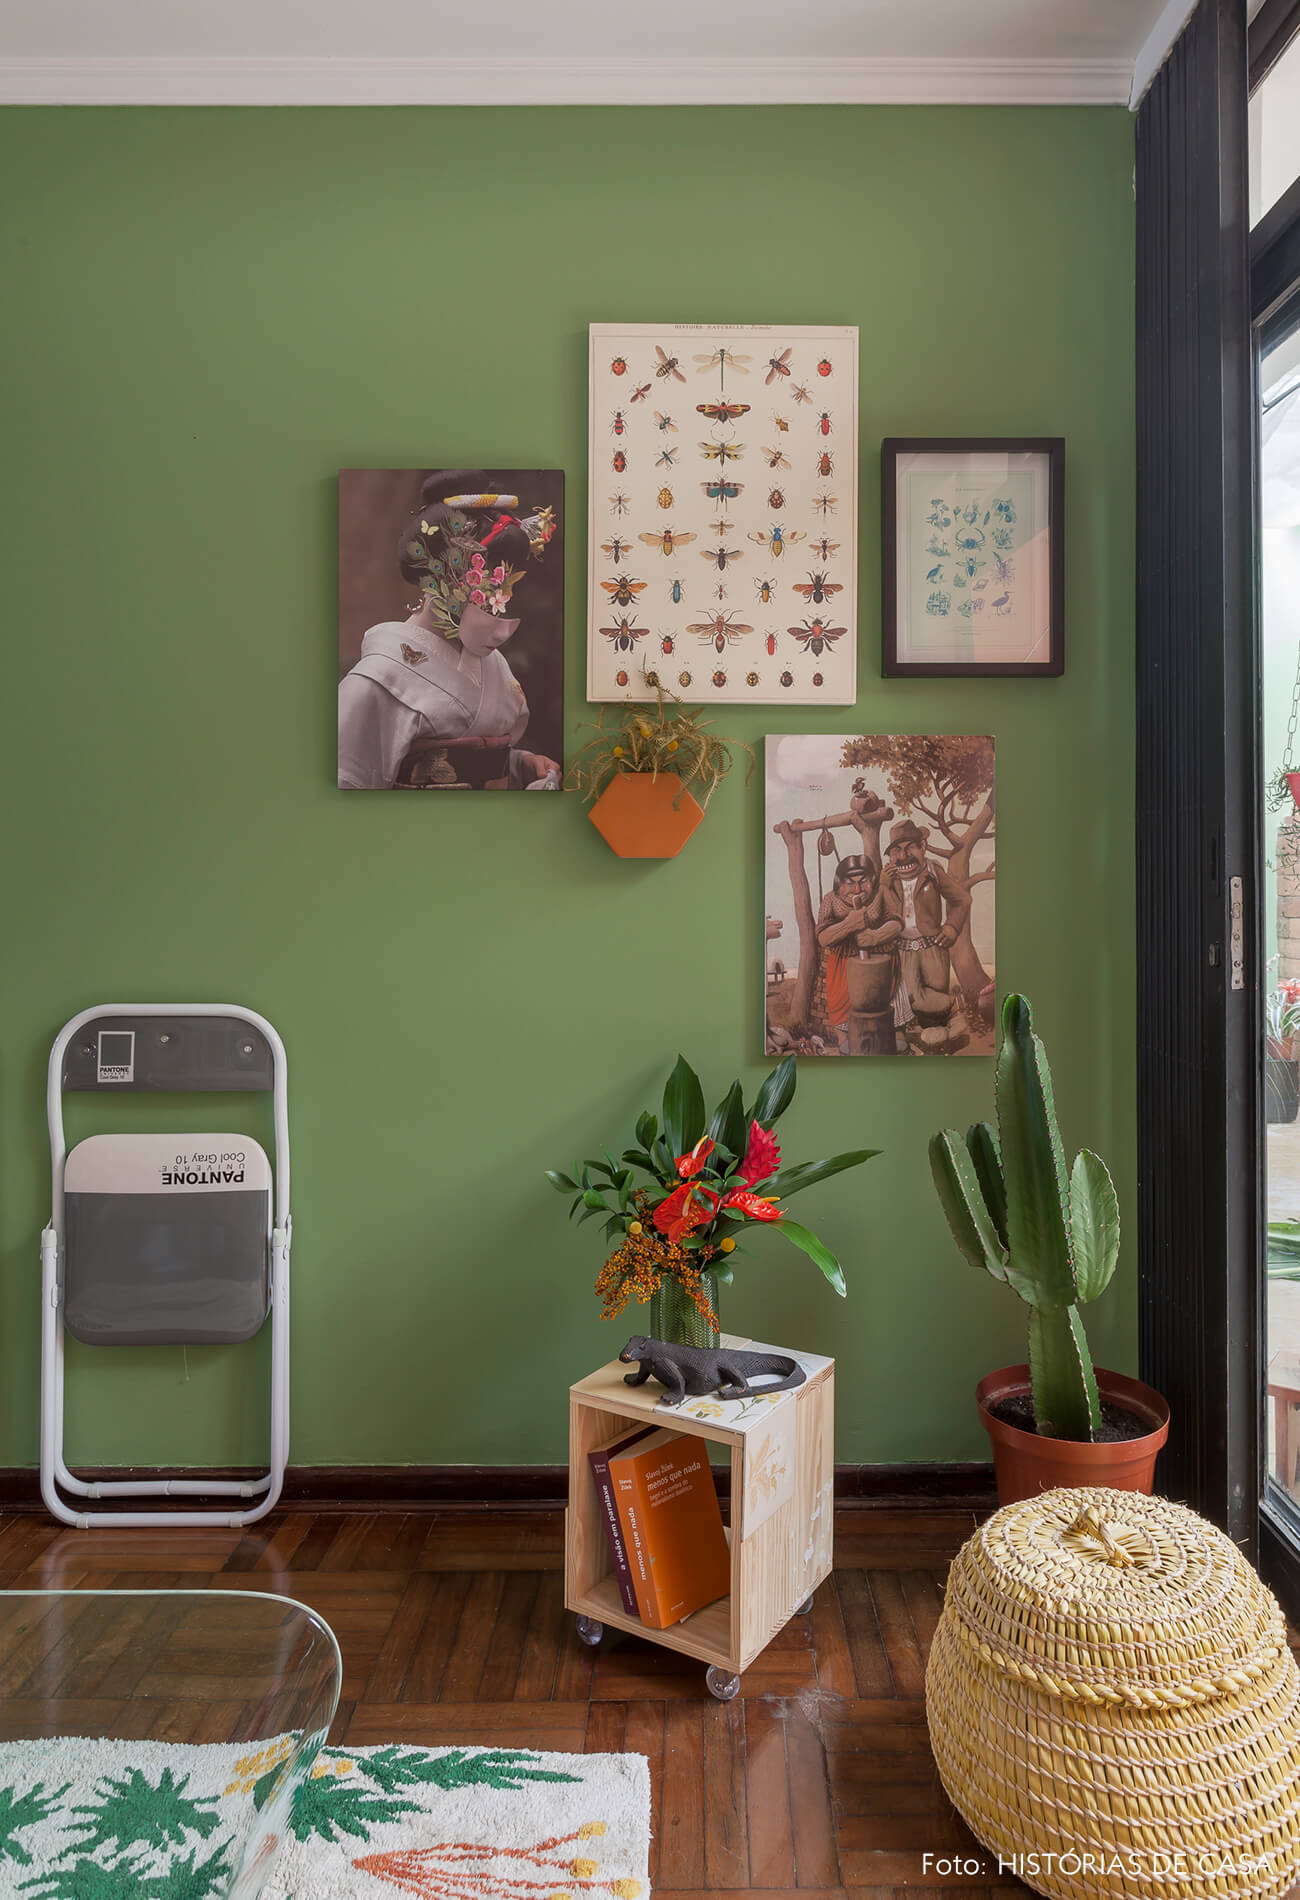 Sala com parede pintada de verde e quadros